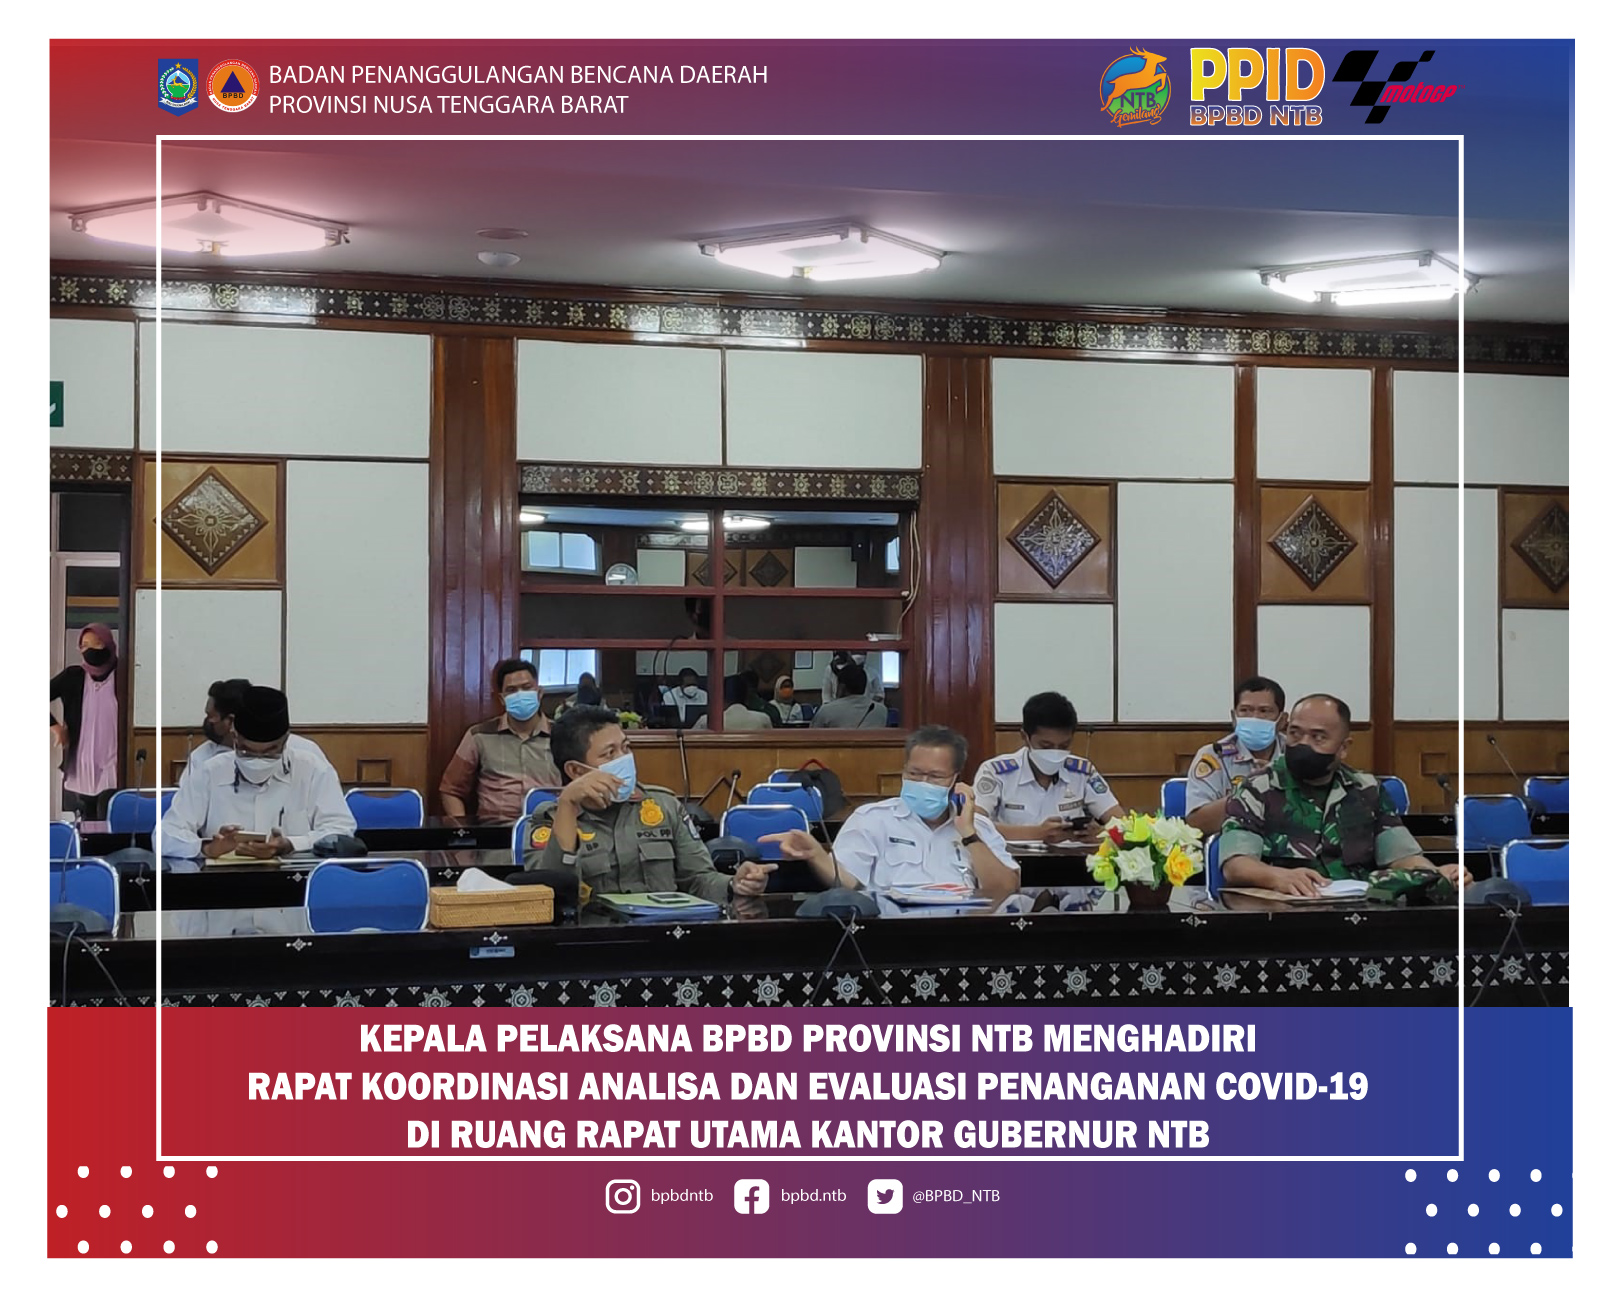 Kepala Pelaksana BPBD Provinsi NTB menghadiri kegiatan Rapat Koordinasi Analisa dan Evaluasi Penanganan COVID-19 di Ruang Rapat Utama Kantor Gubernur NTB (Rabu, 29 Desember 2021)